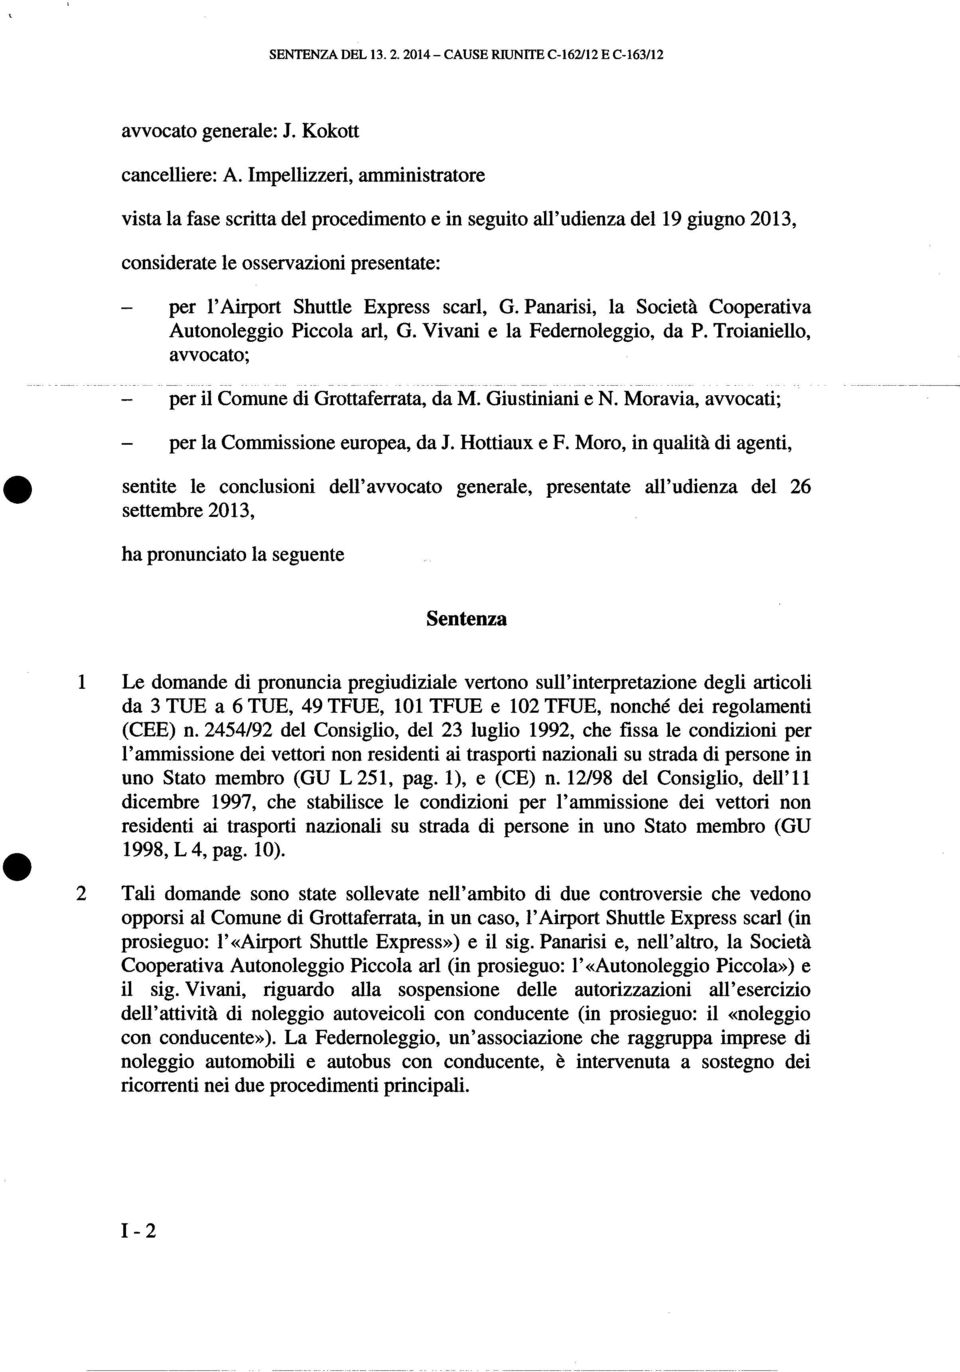 Panarisi, la Società Cooperativa Autonoleggio Piccola arl, G. Vivani e la Fedemoleggio, da P. Troianiello, avvocato; -- ----- ------- per ilcomune di Grottaferrata, da M. Giustiniani e N.